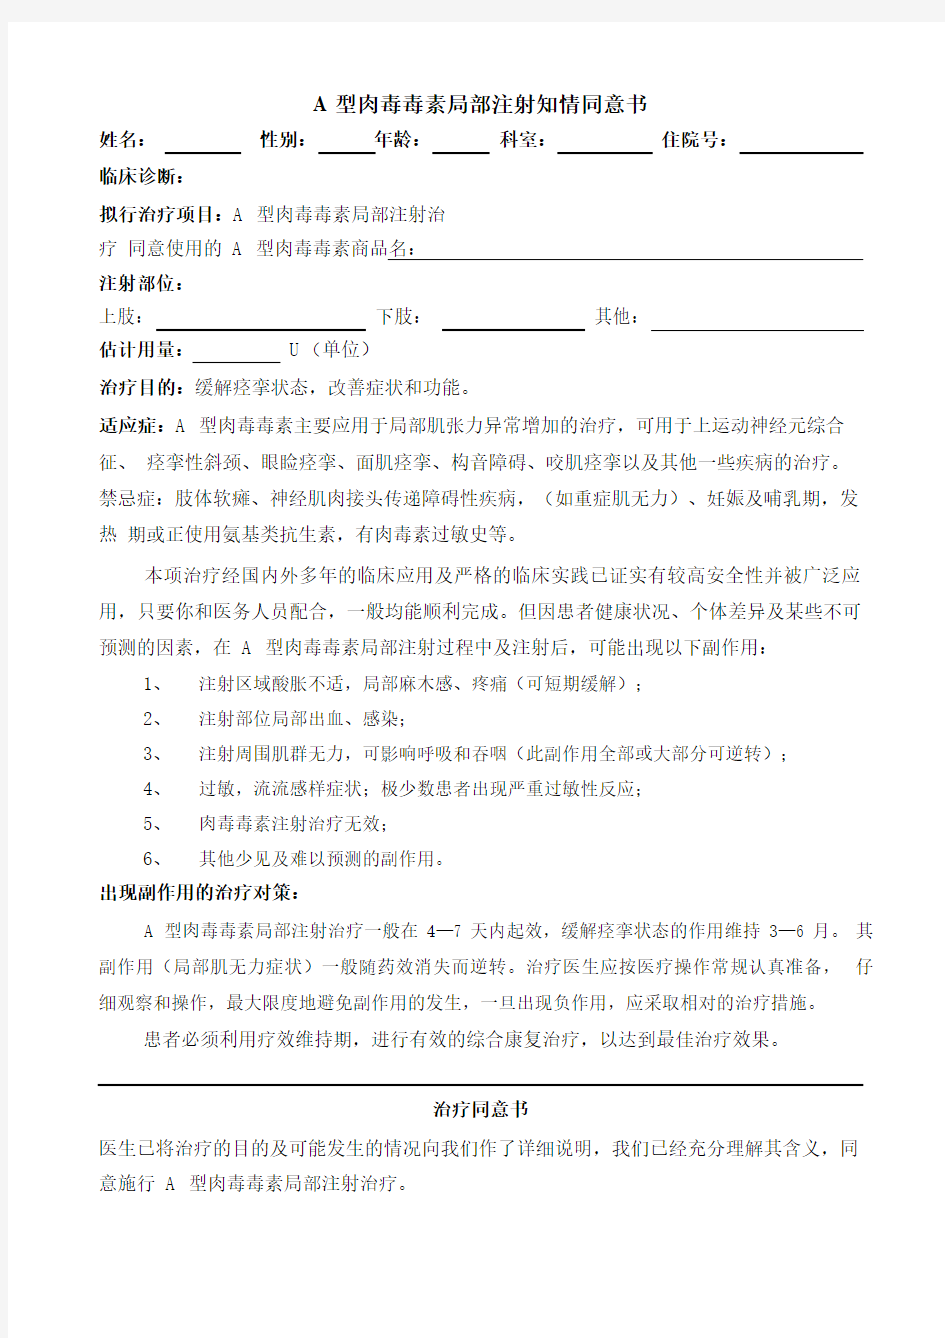 A型肉毒毒素局部注射知情同意书.pdf